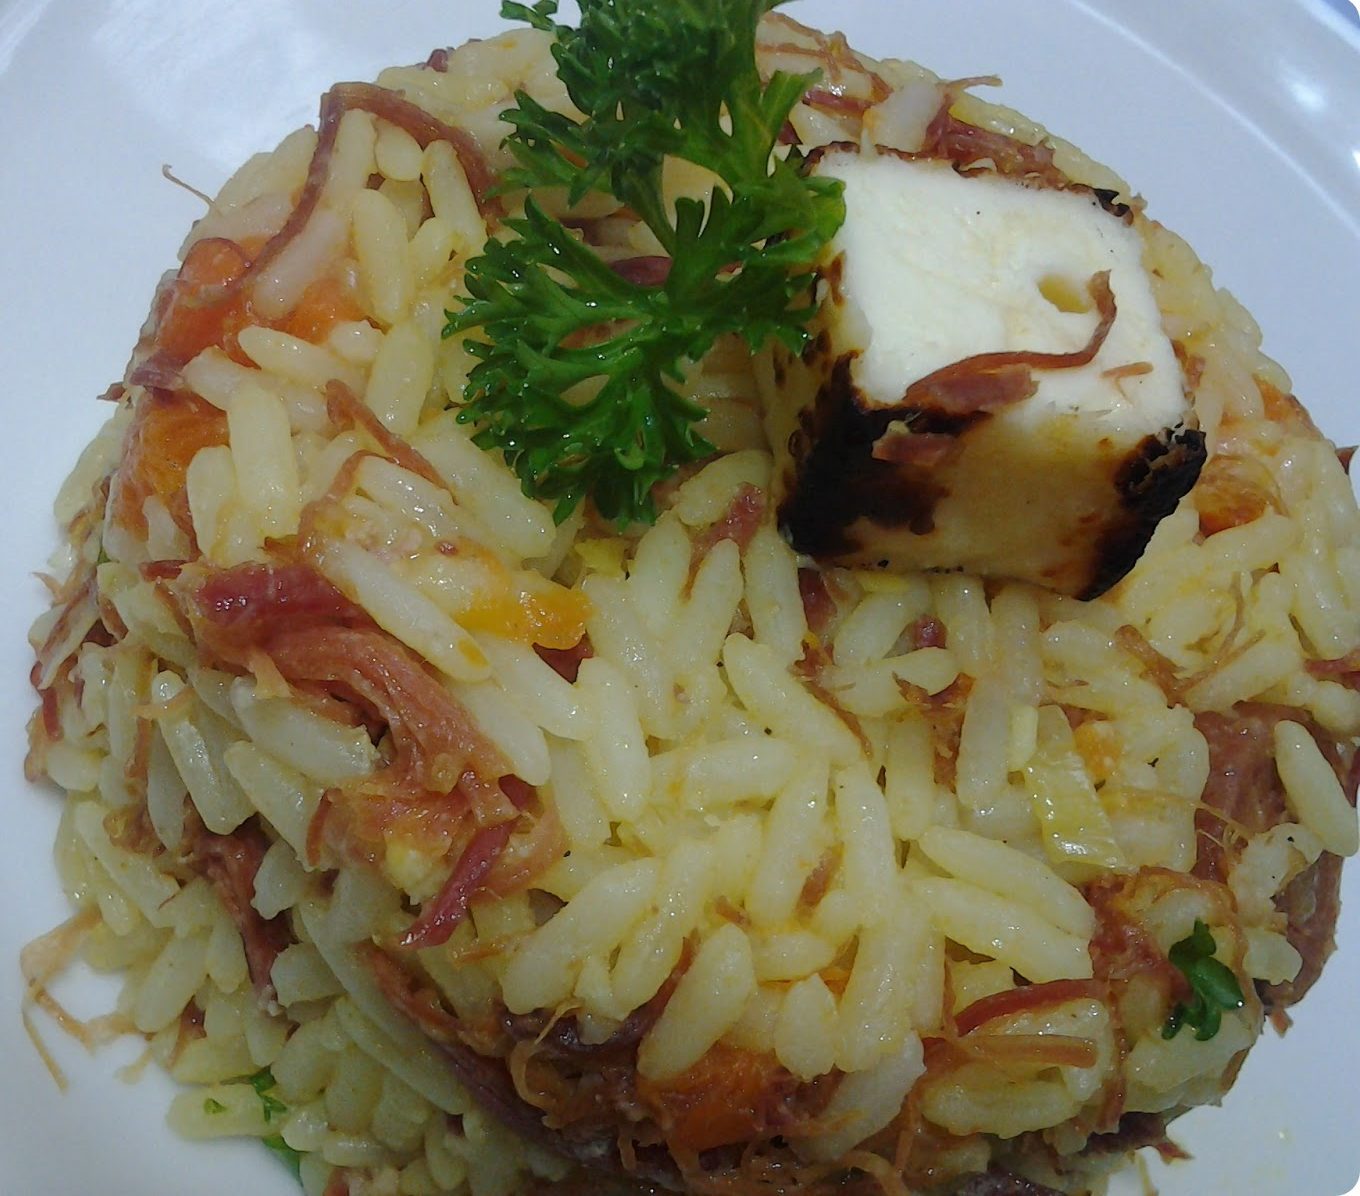 arroz colorido com carne seca, abóbora e queijo coalho